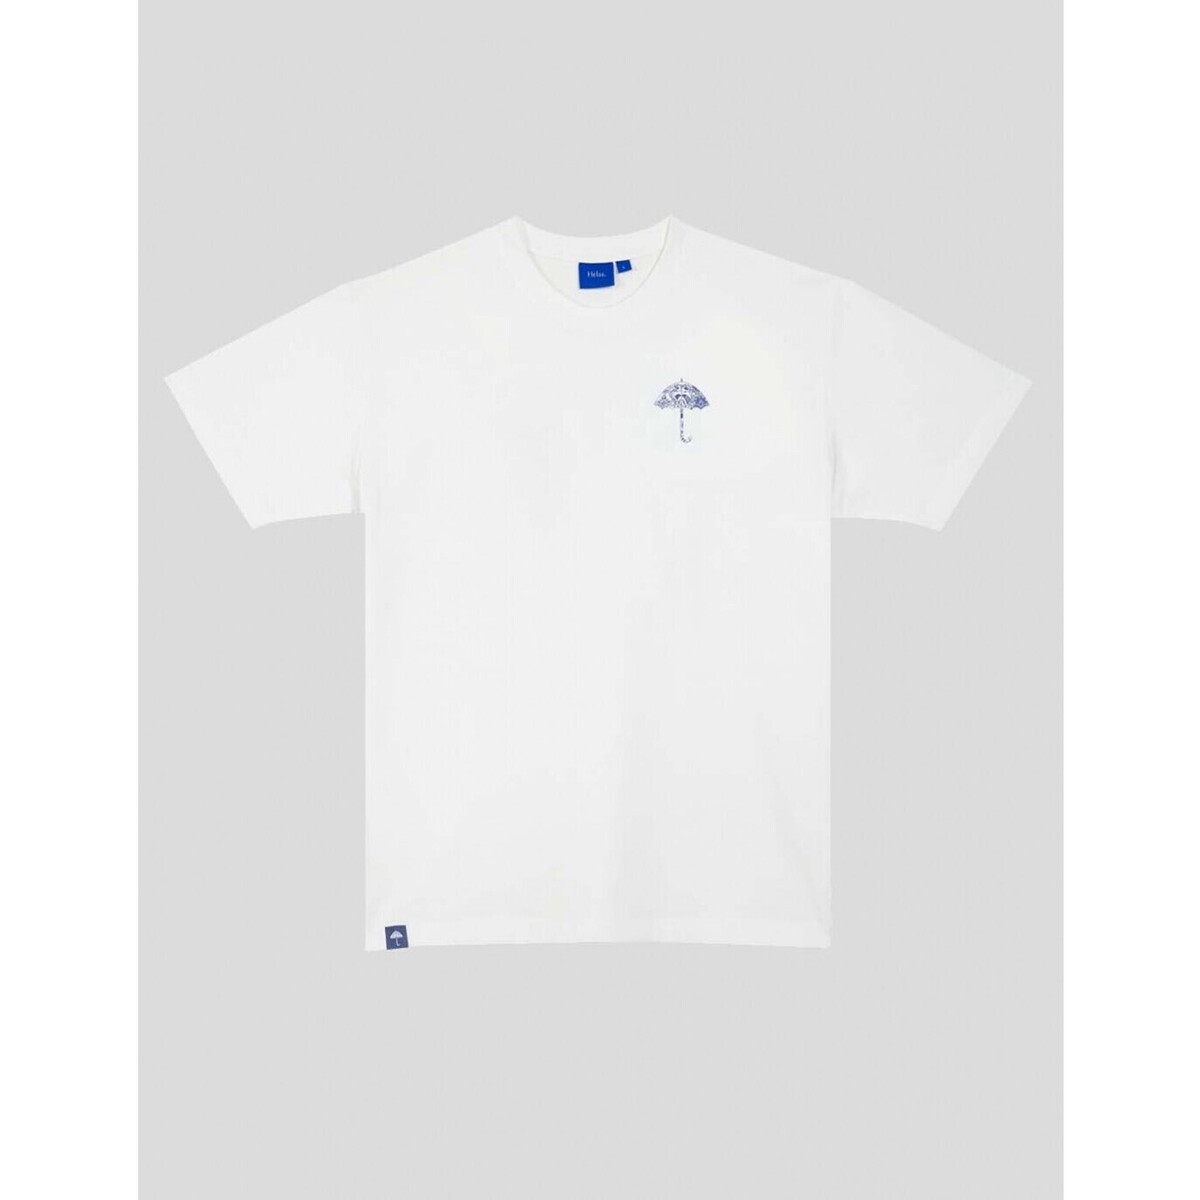 Vêtements Homme T-shirts manches courtes Hélas  Blanc